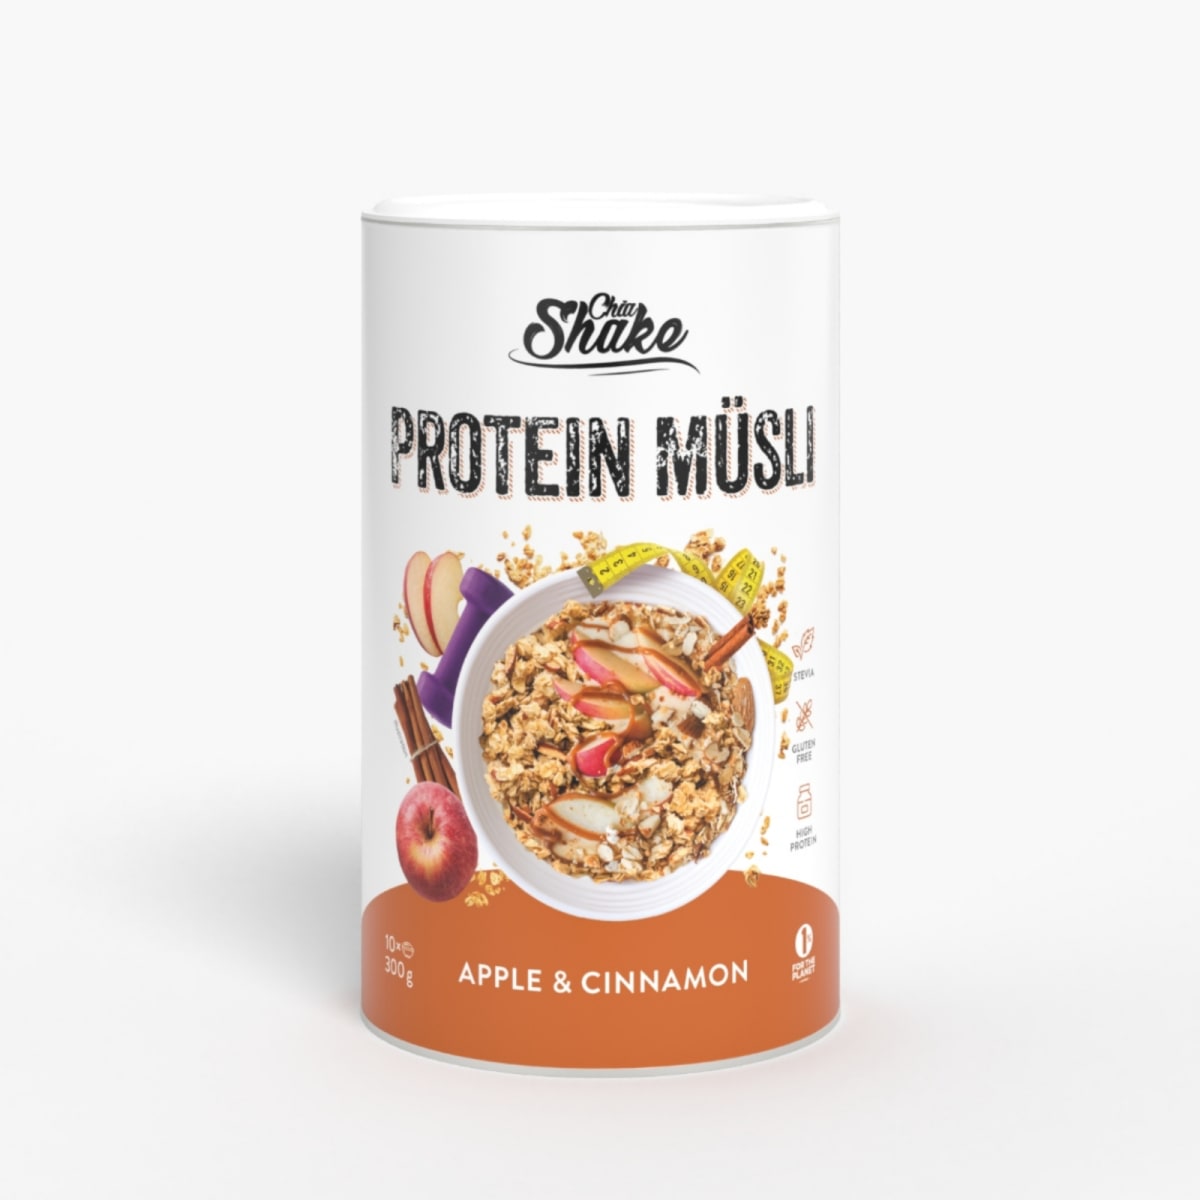 Už jste ochutnali proteinové müsli?